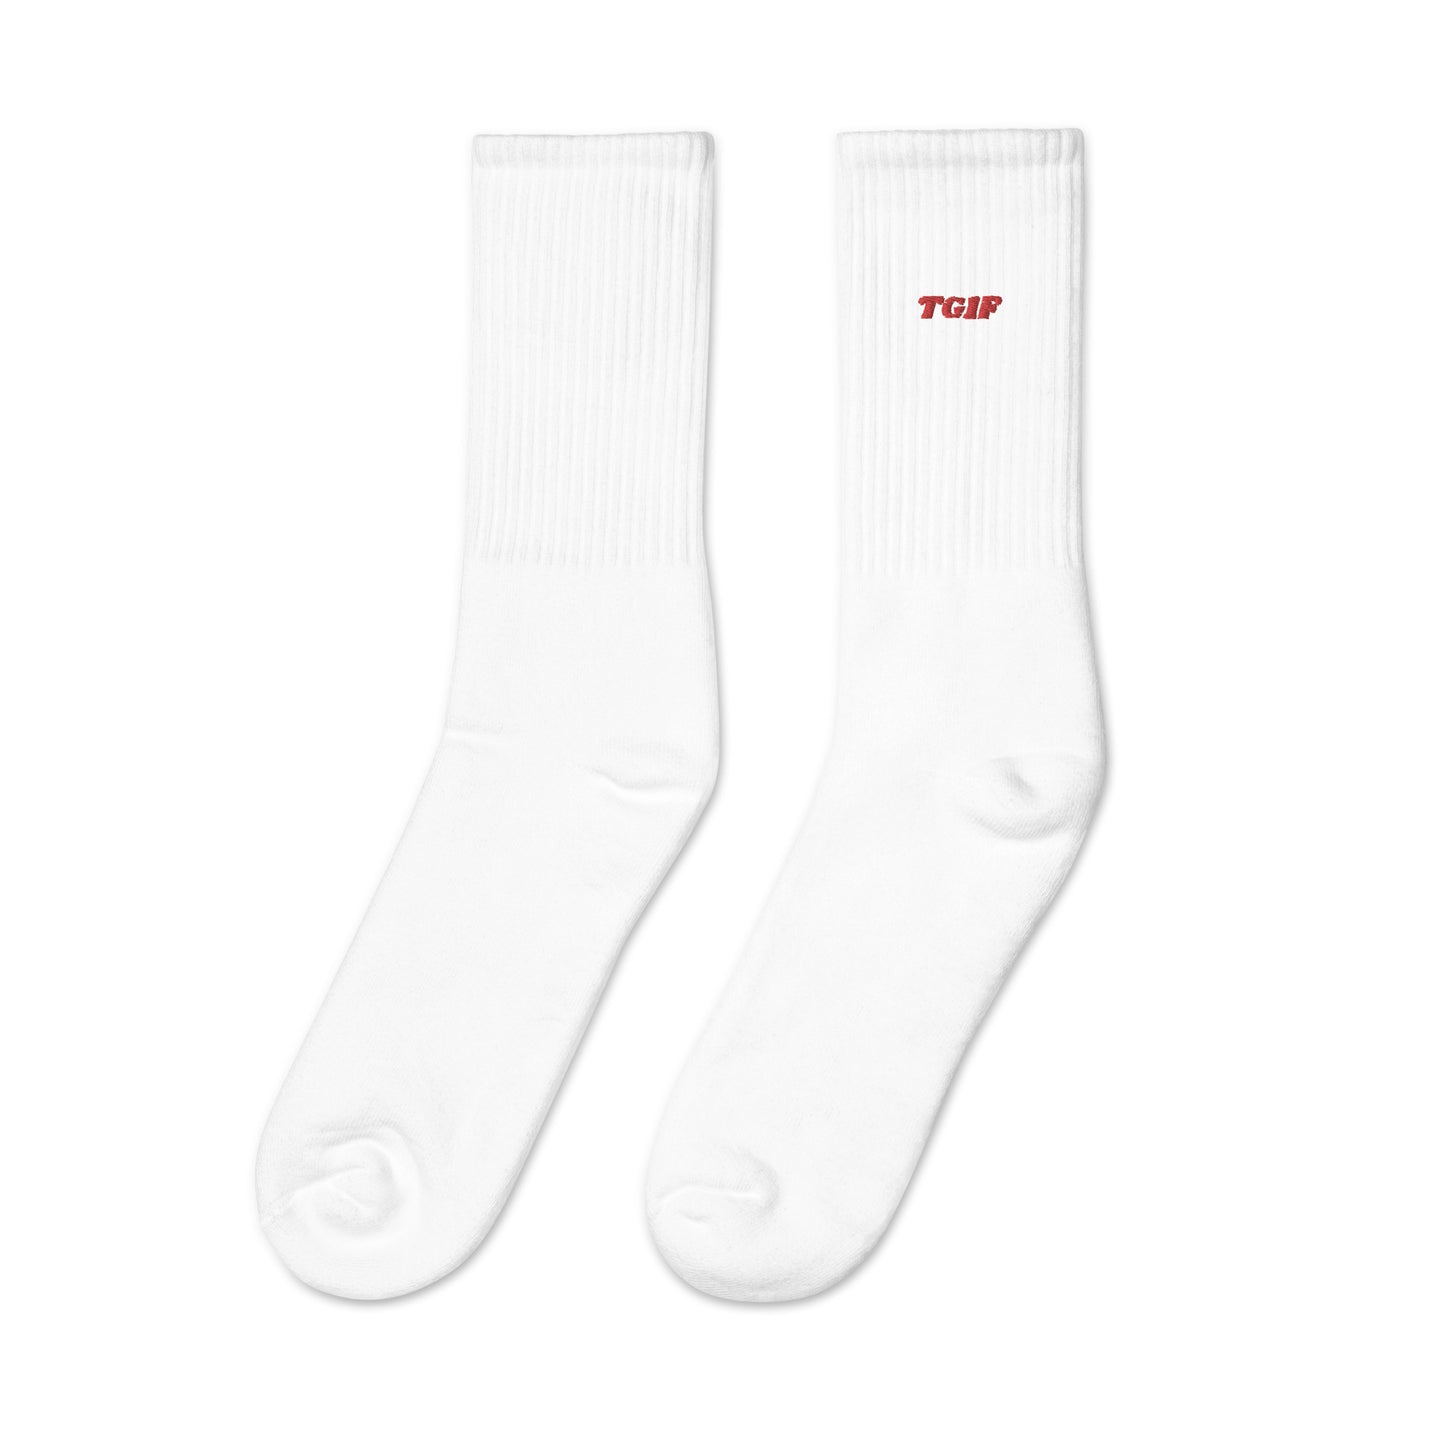 TG1F Embroidered Socks